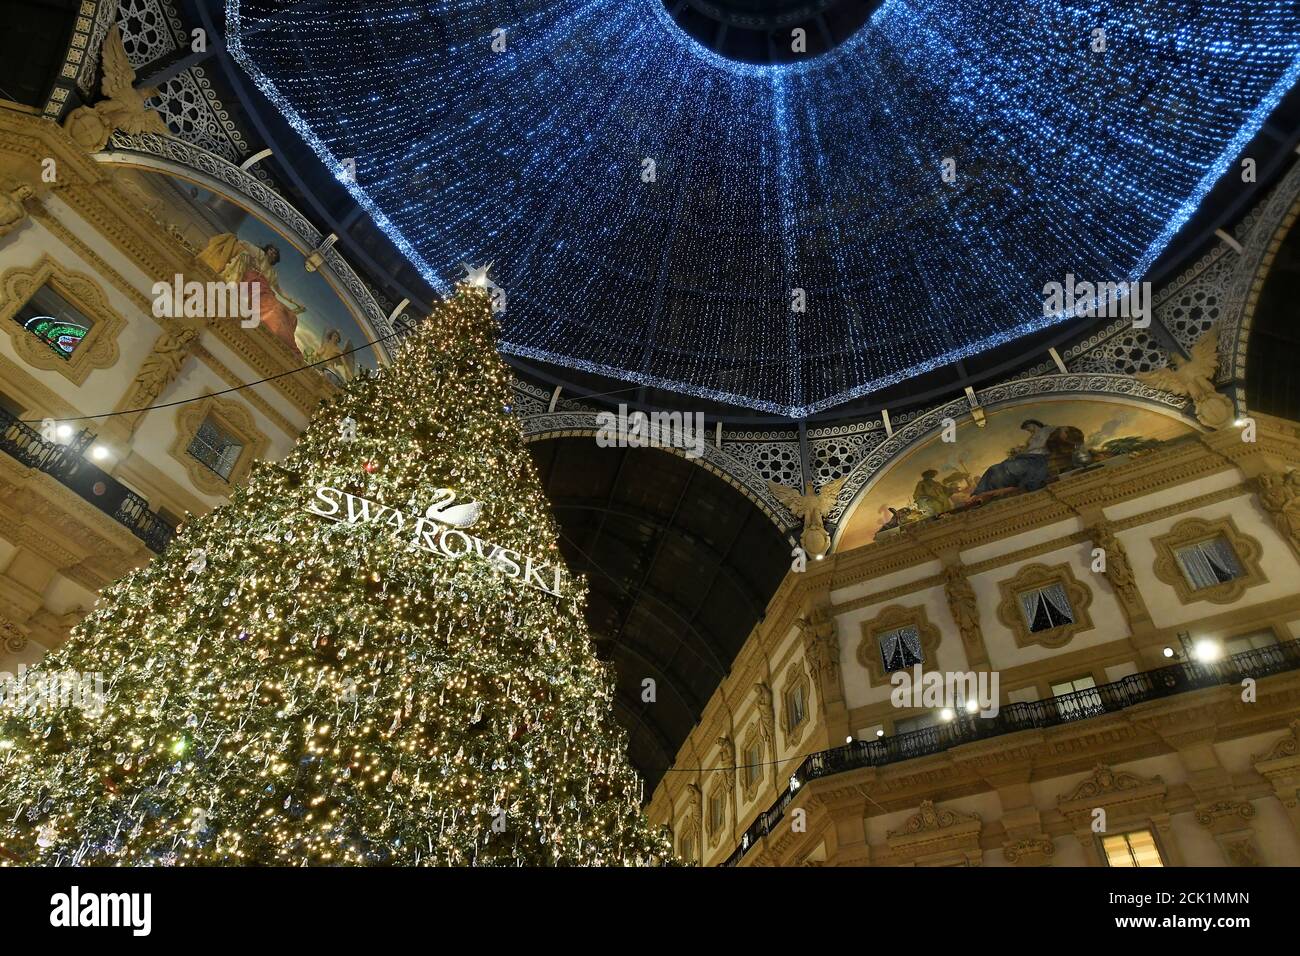 Un árbol de Navidad decorado con cristales de Swarovski se encuentra en el  centro comercial Galleria Vittorio Emanuele II en el centro de Milán,  Italia, 1 de diciembre de 2019. REUTERS/Flavio lo